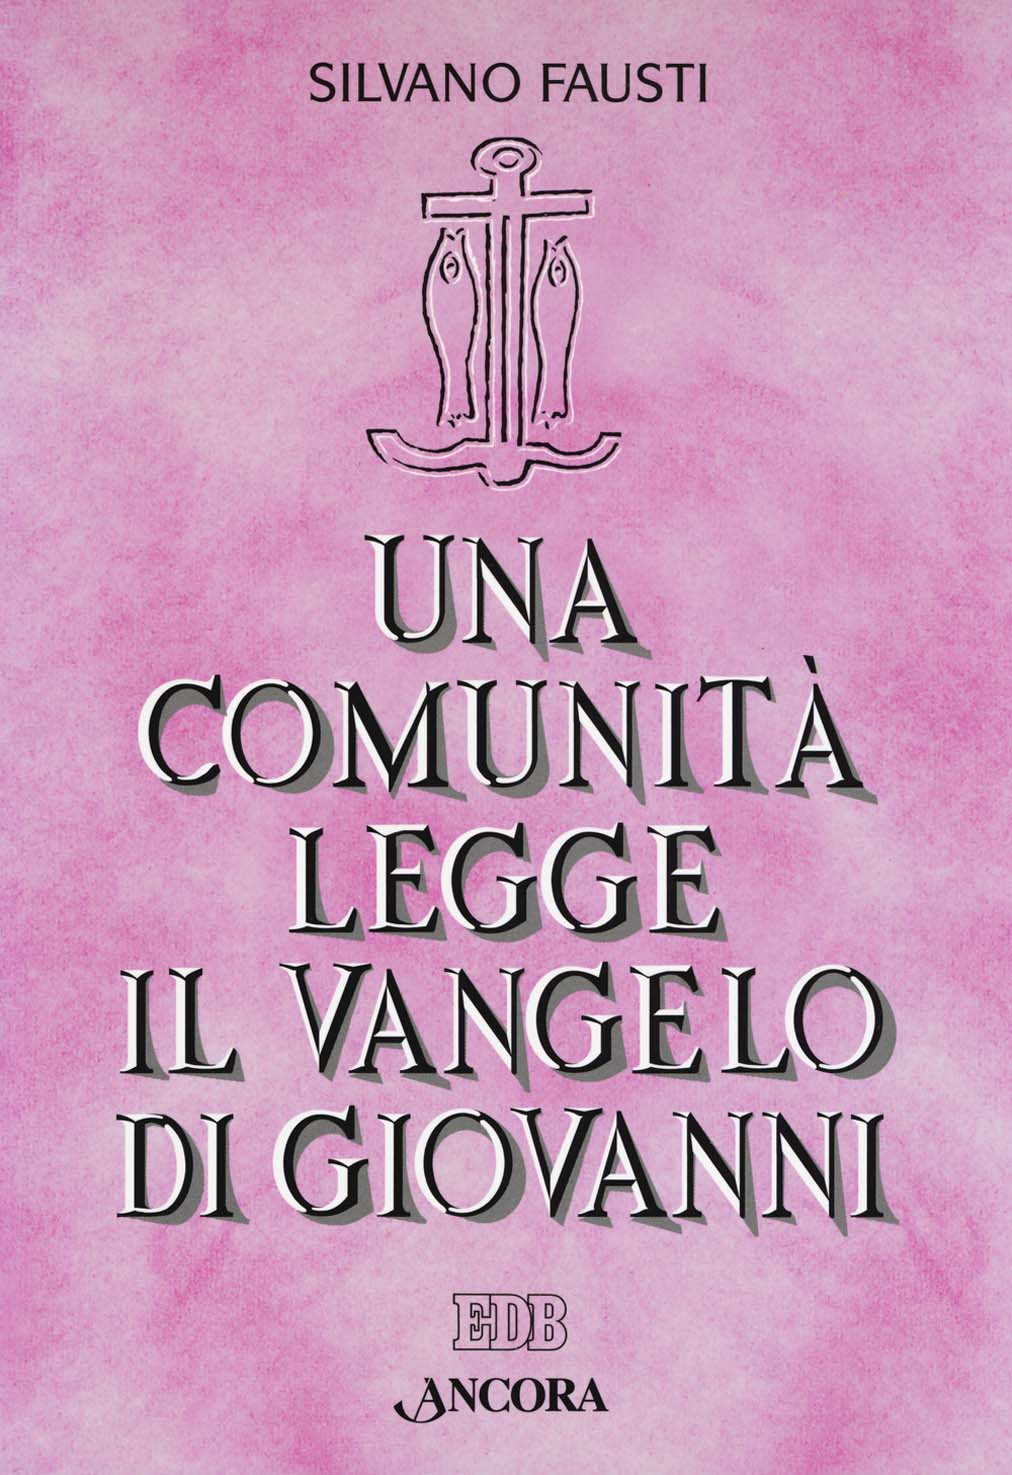 Libri Silvano Fausti - Una Comunita Legge Il Vangelo Di Giovanni NUOVO SIGILLATO, EDIZIONE DEL 25/09/2018 SUBITO DISPONIBILE